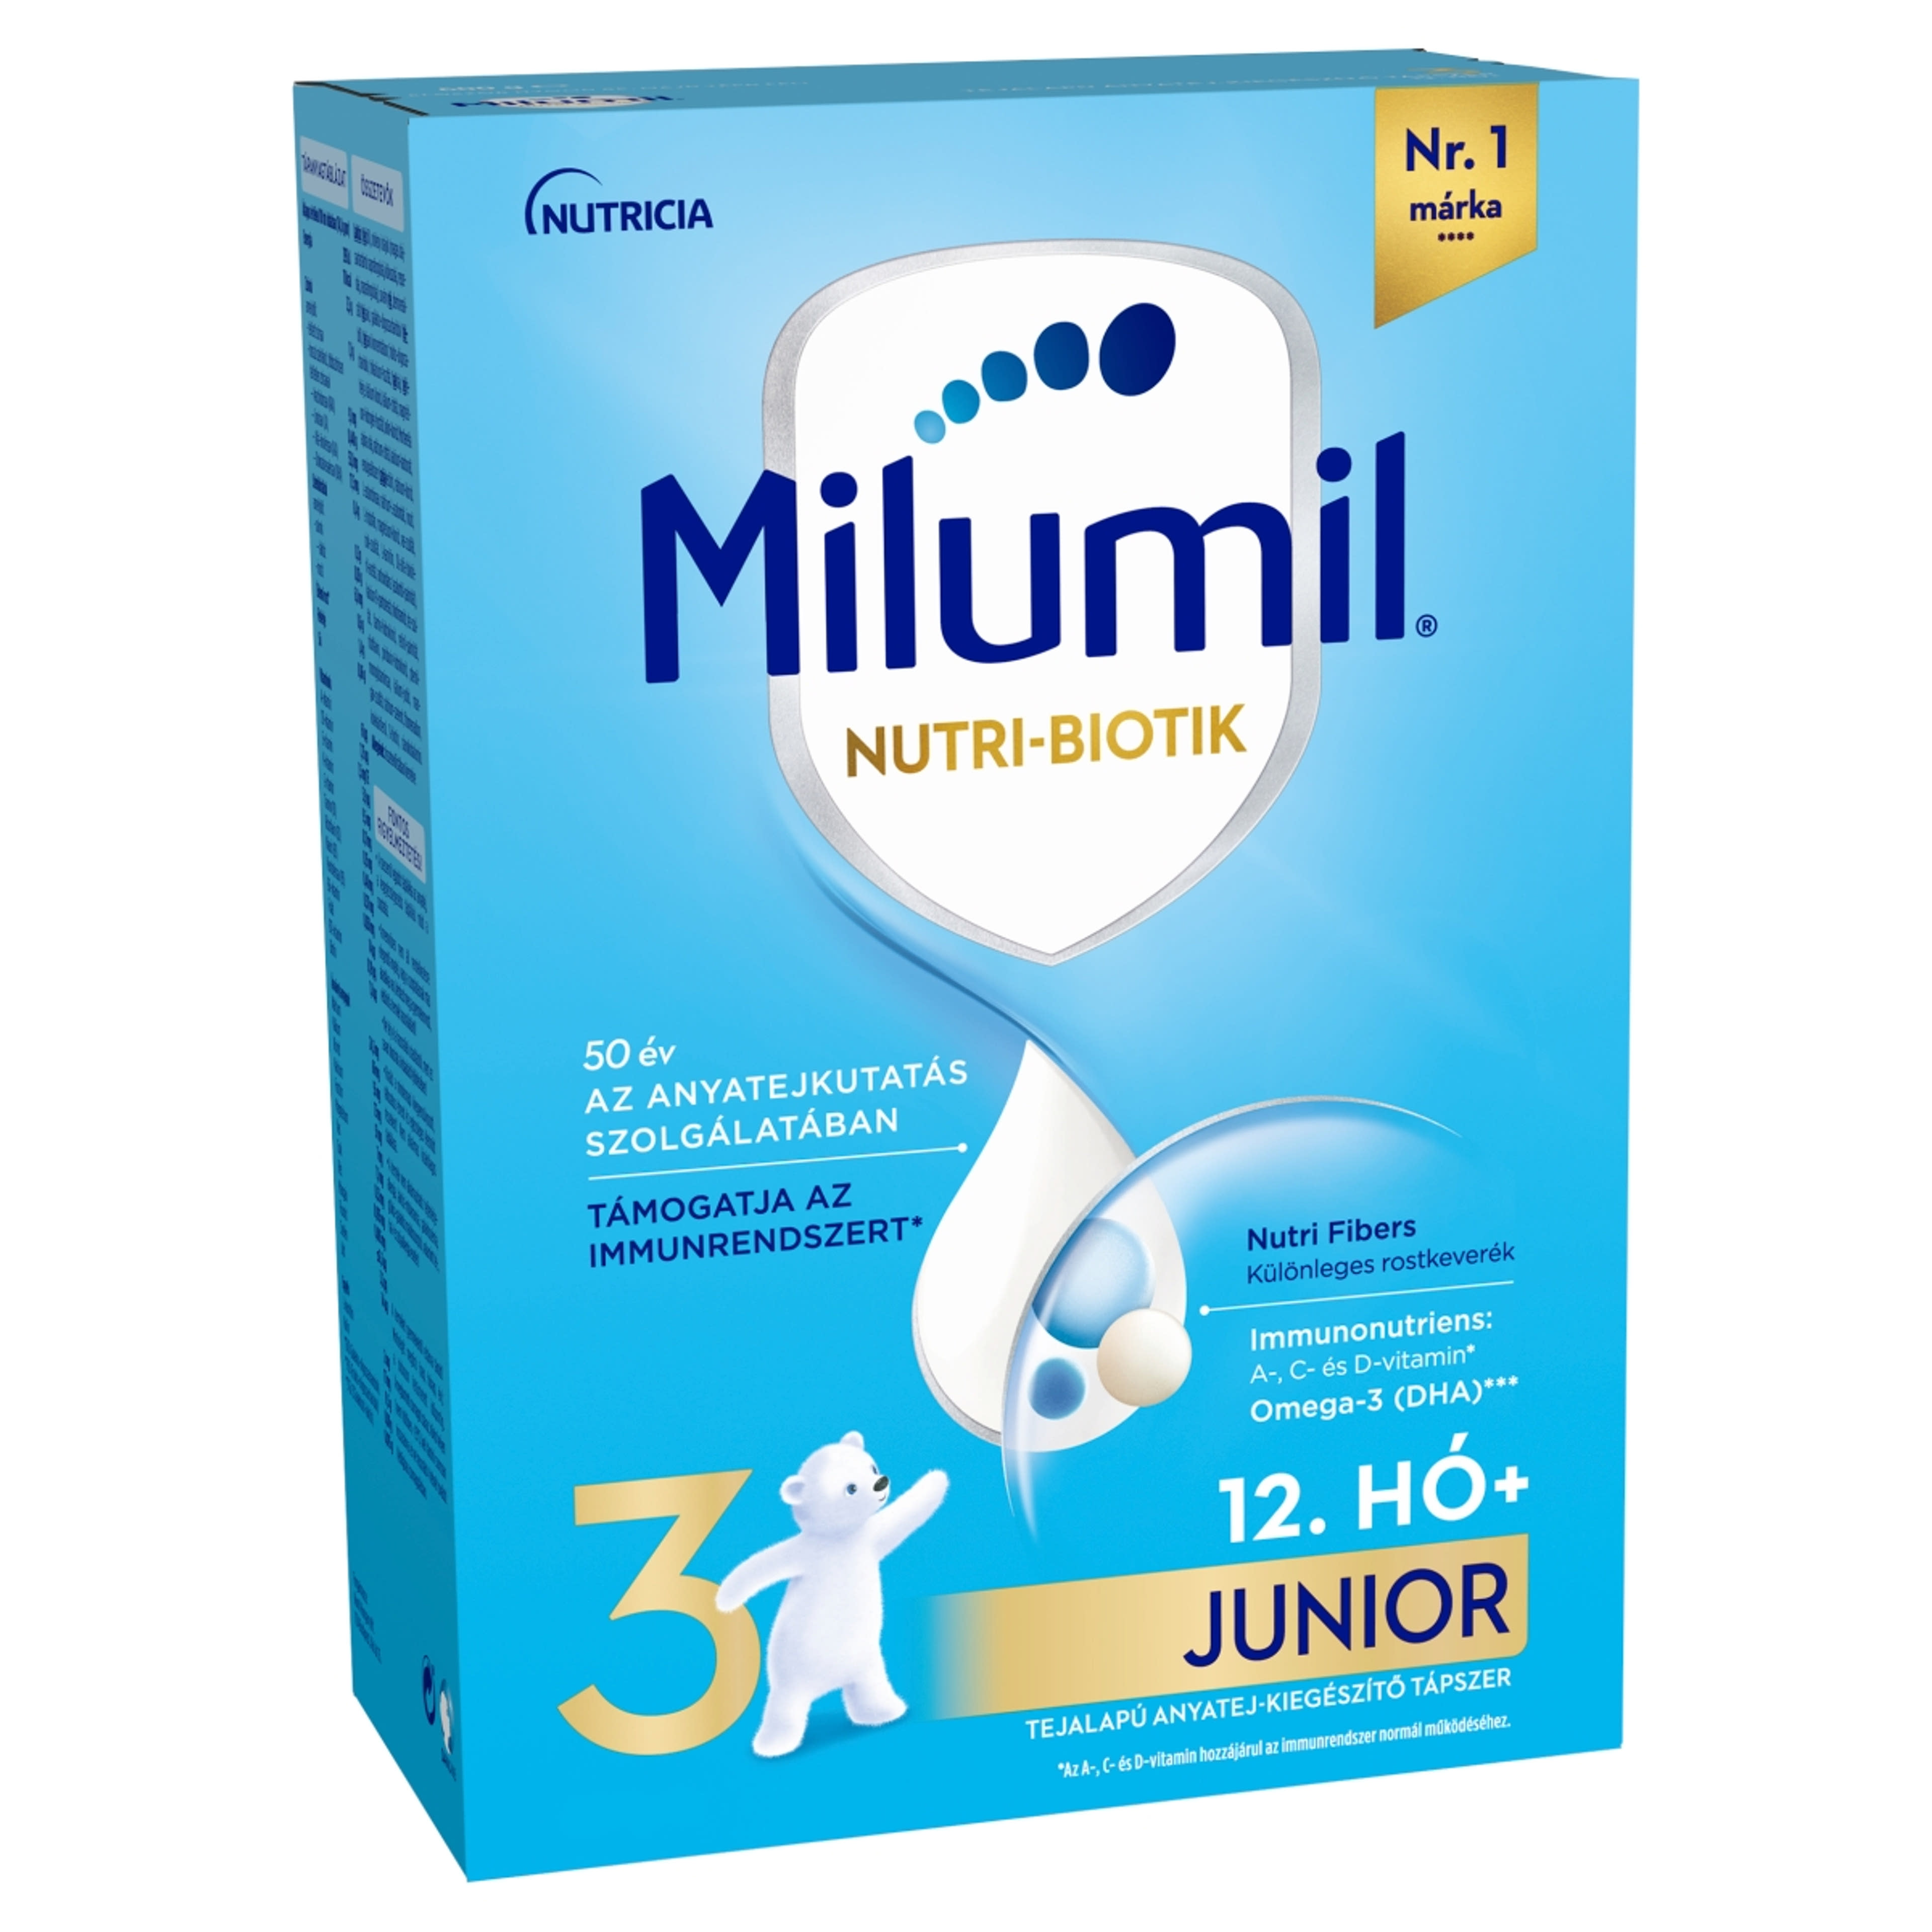 Milumil 3 Junior tejalapú anyatej-kiegészítő tápszer 12. hónapos kortól - 500 g